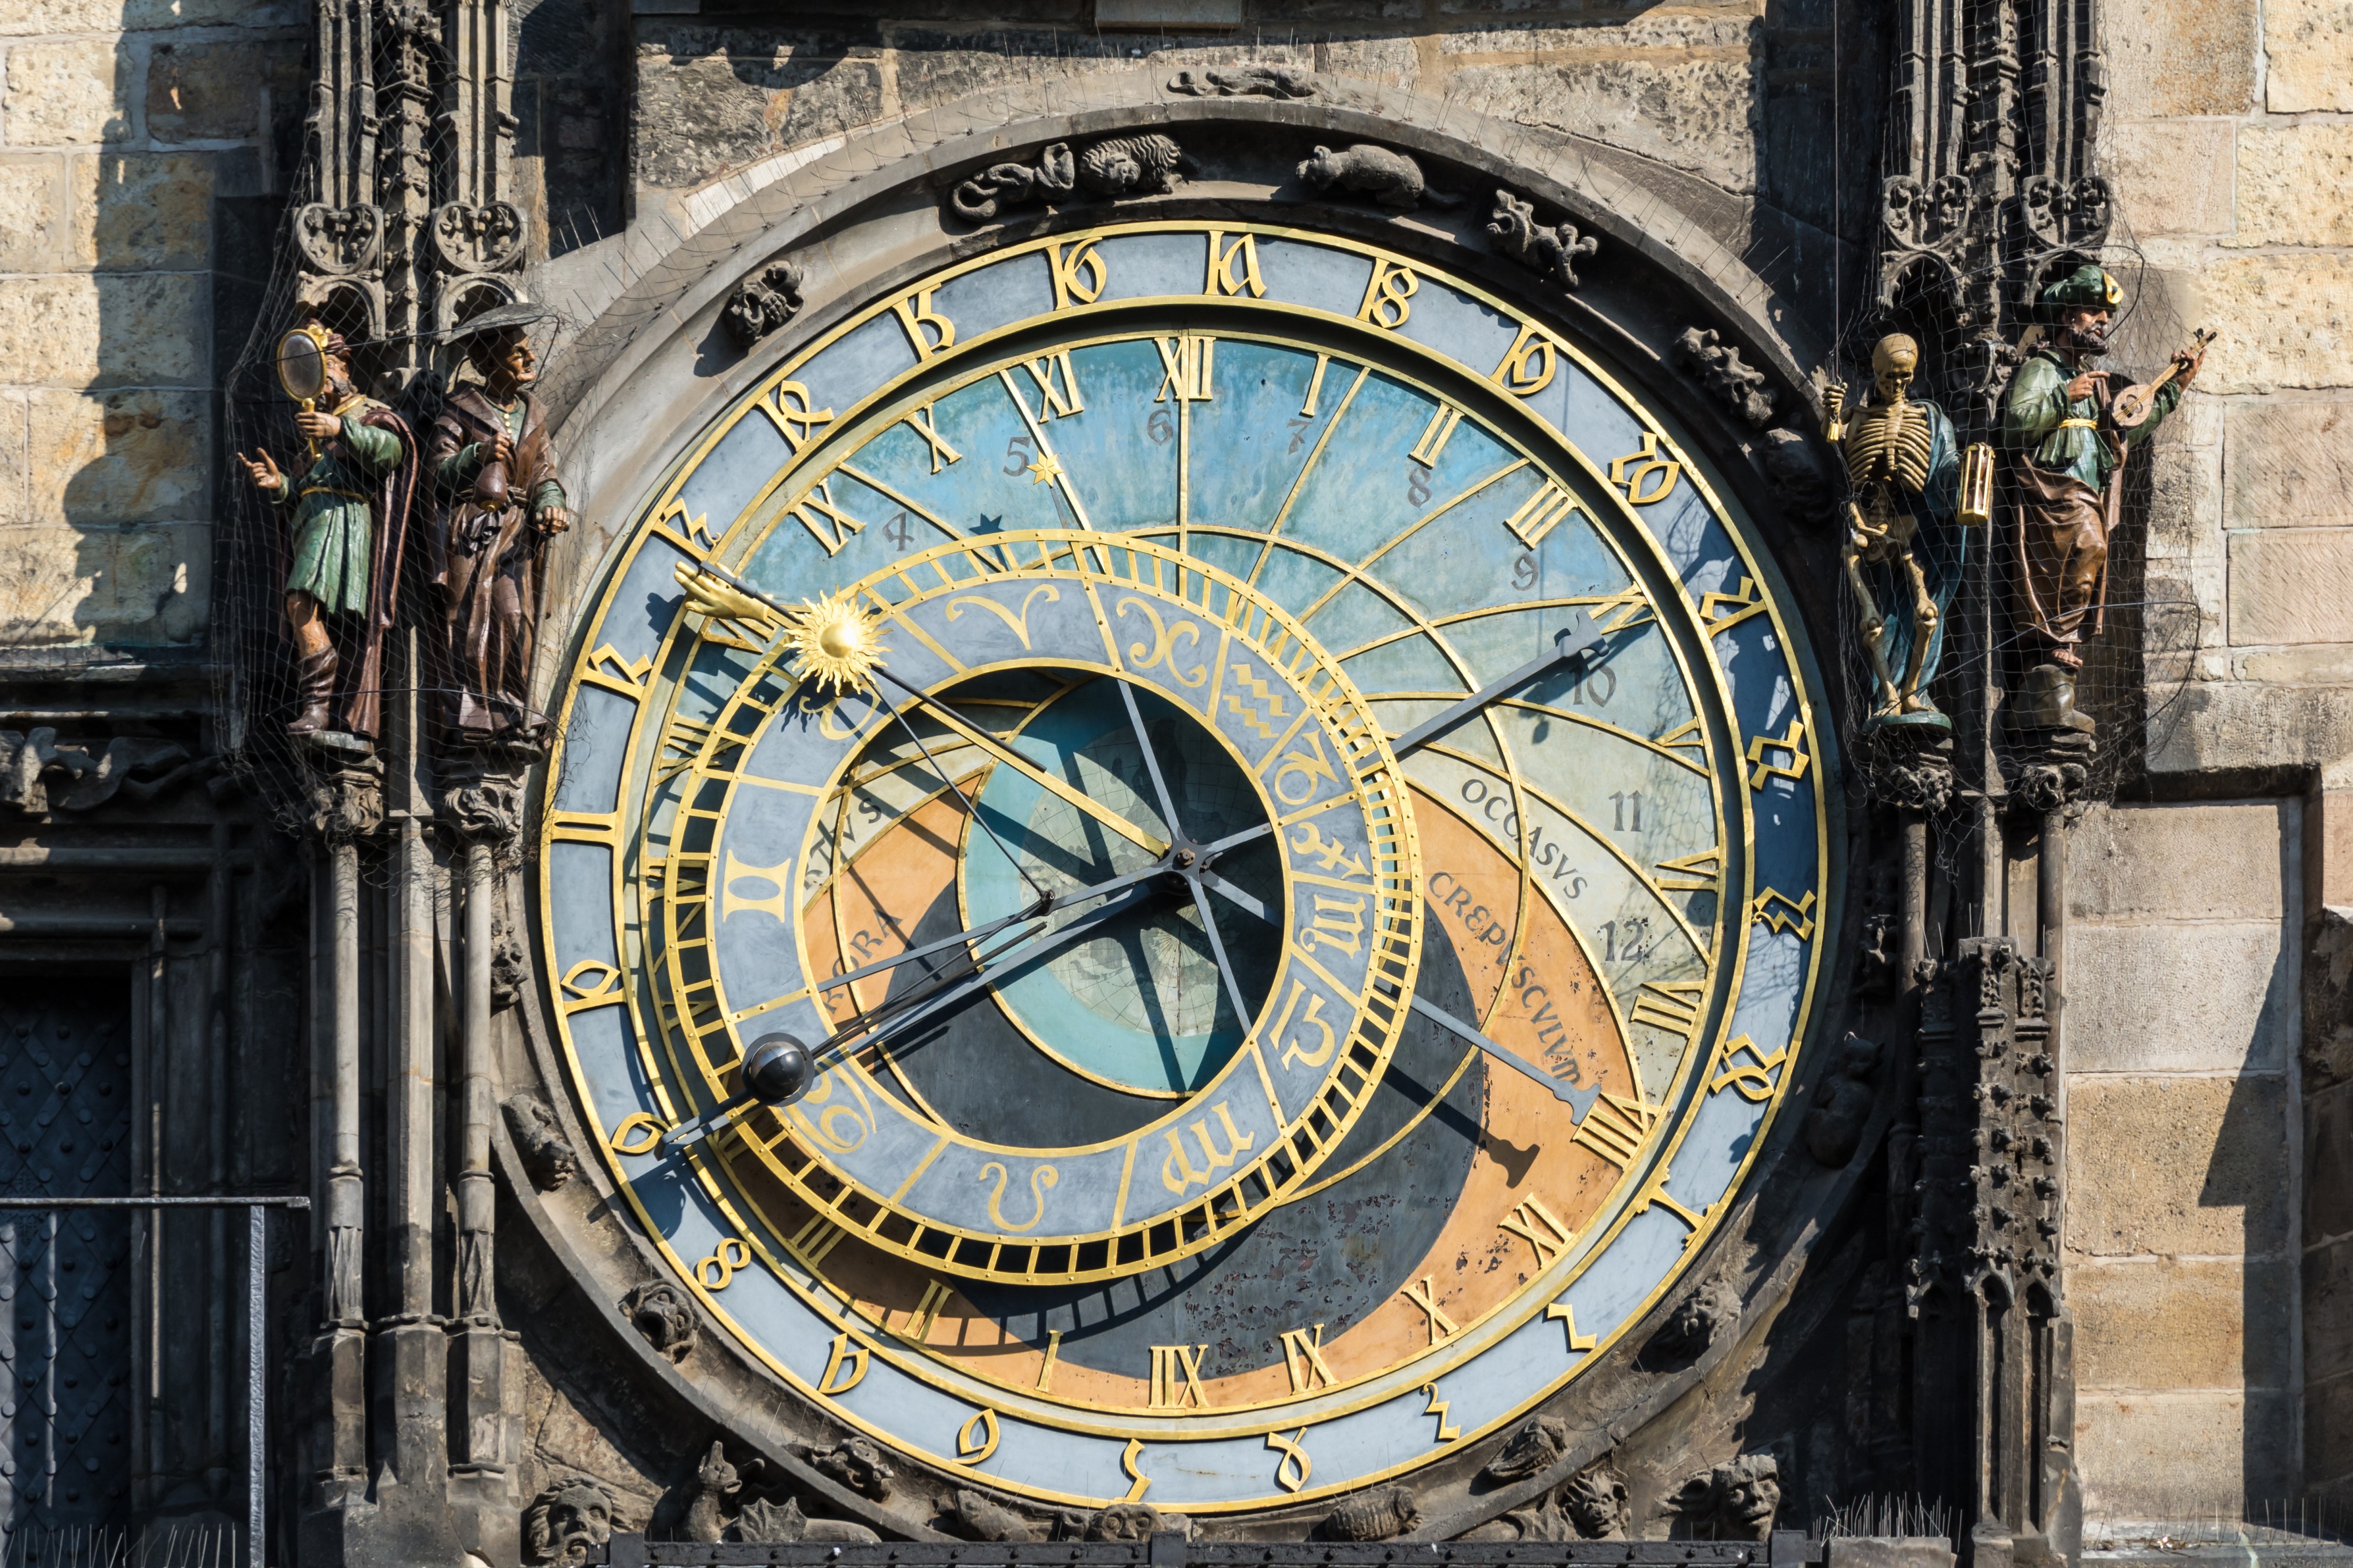 Praha Astronomical Clock Dial 01